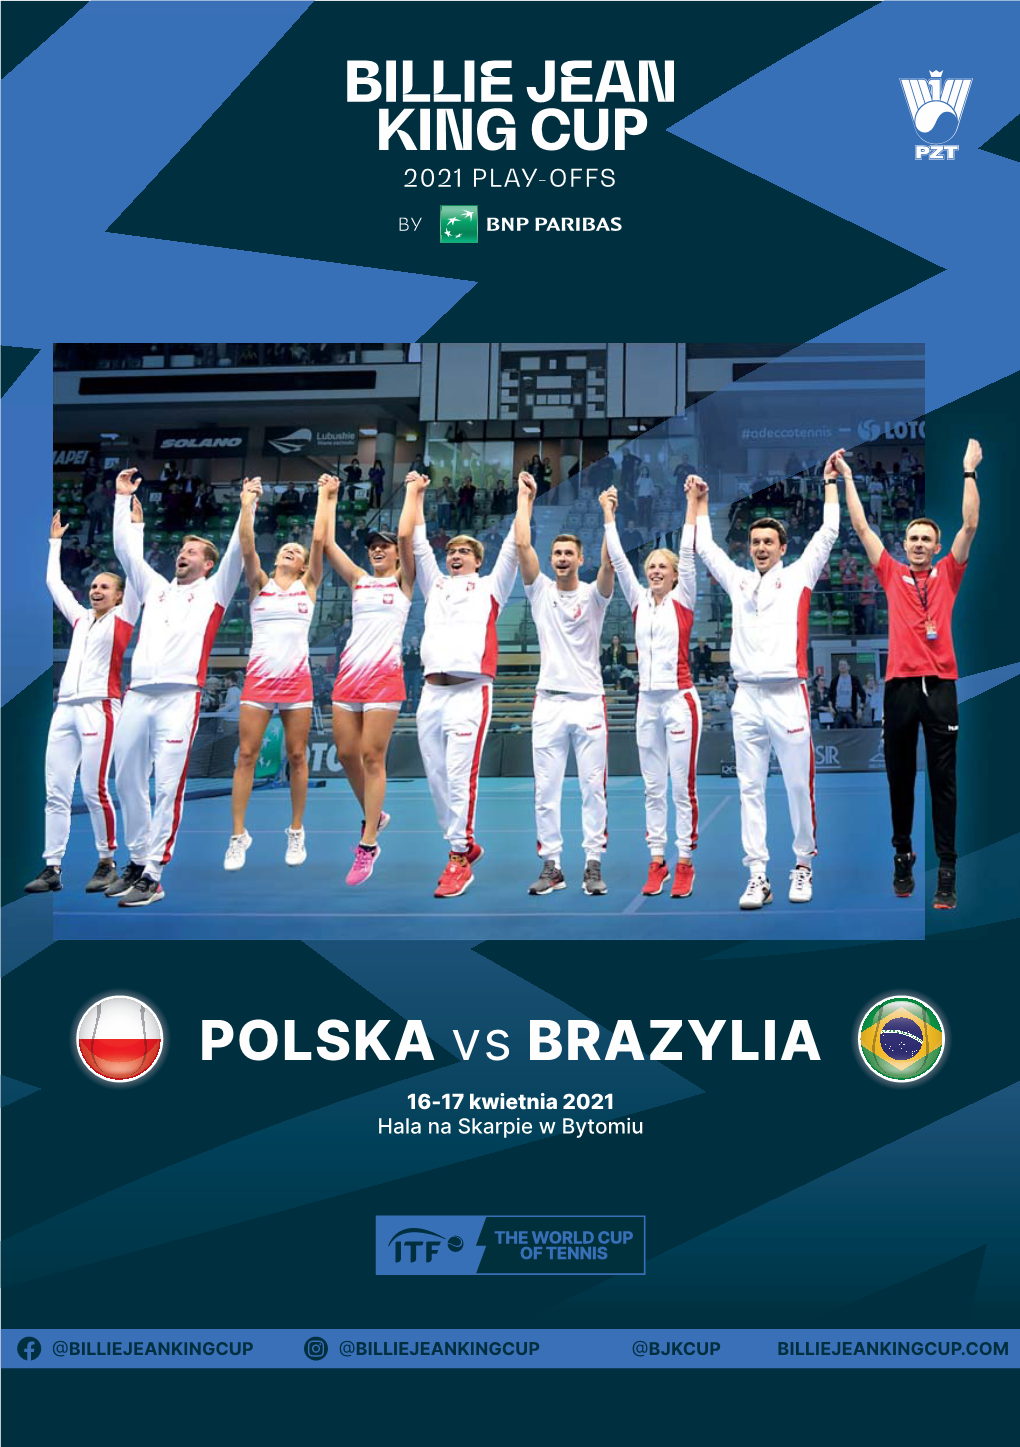 Billie Jean King Cup by BNP Paribas Pomiędzy Polską a Brazylią